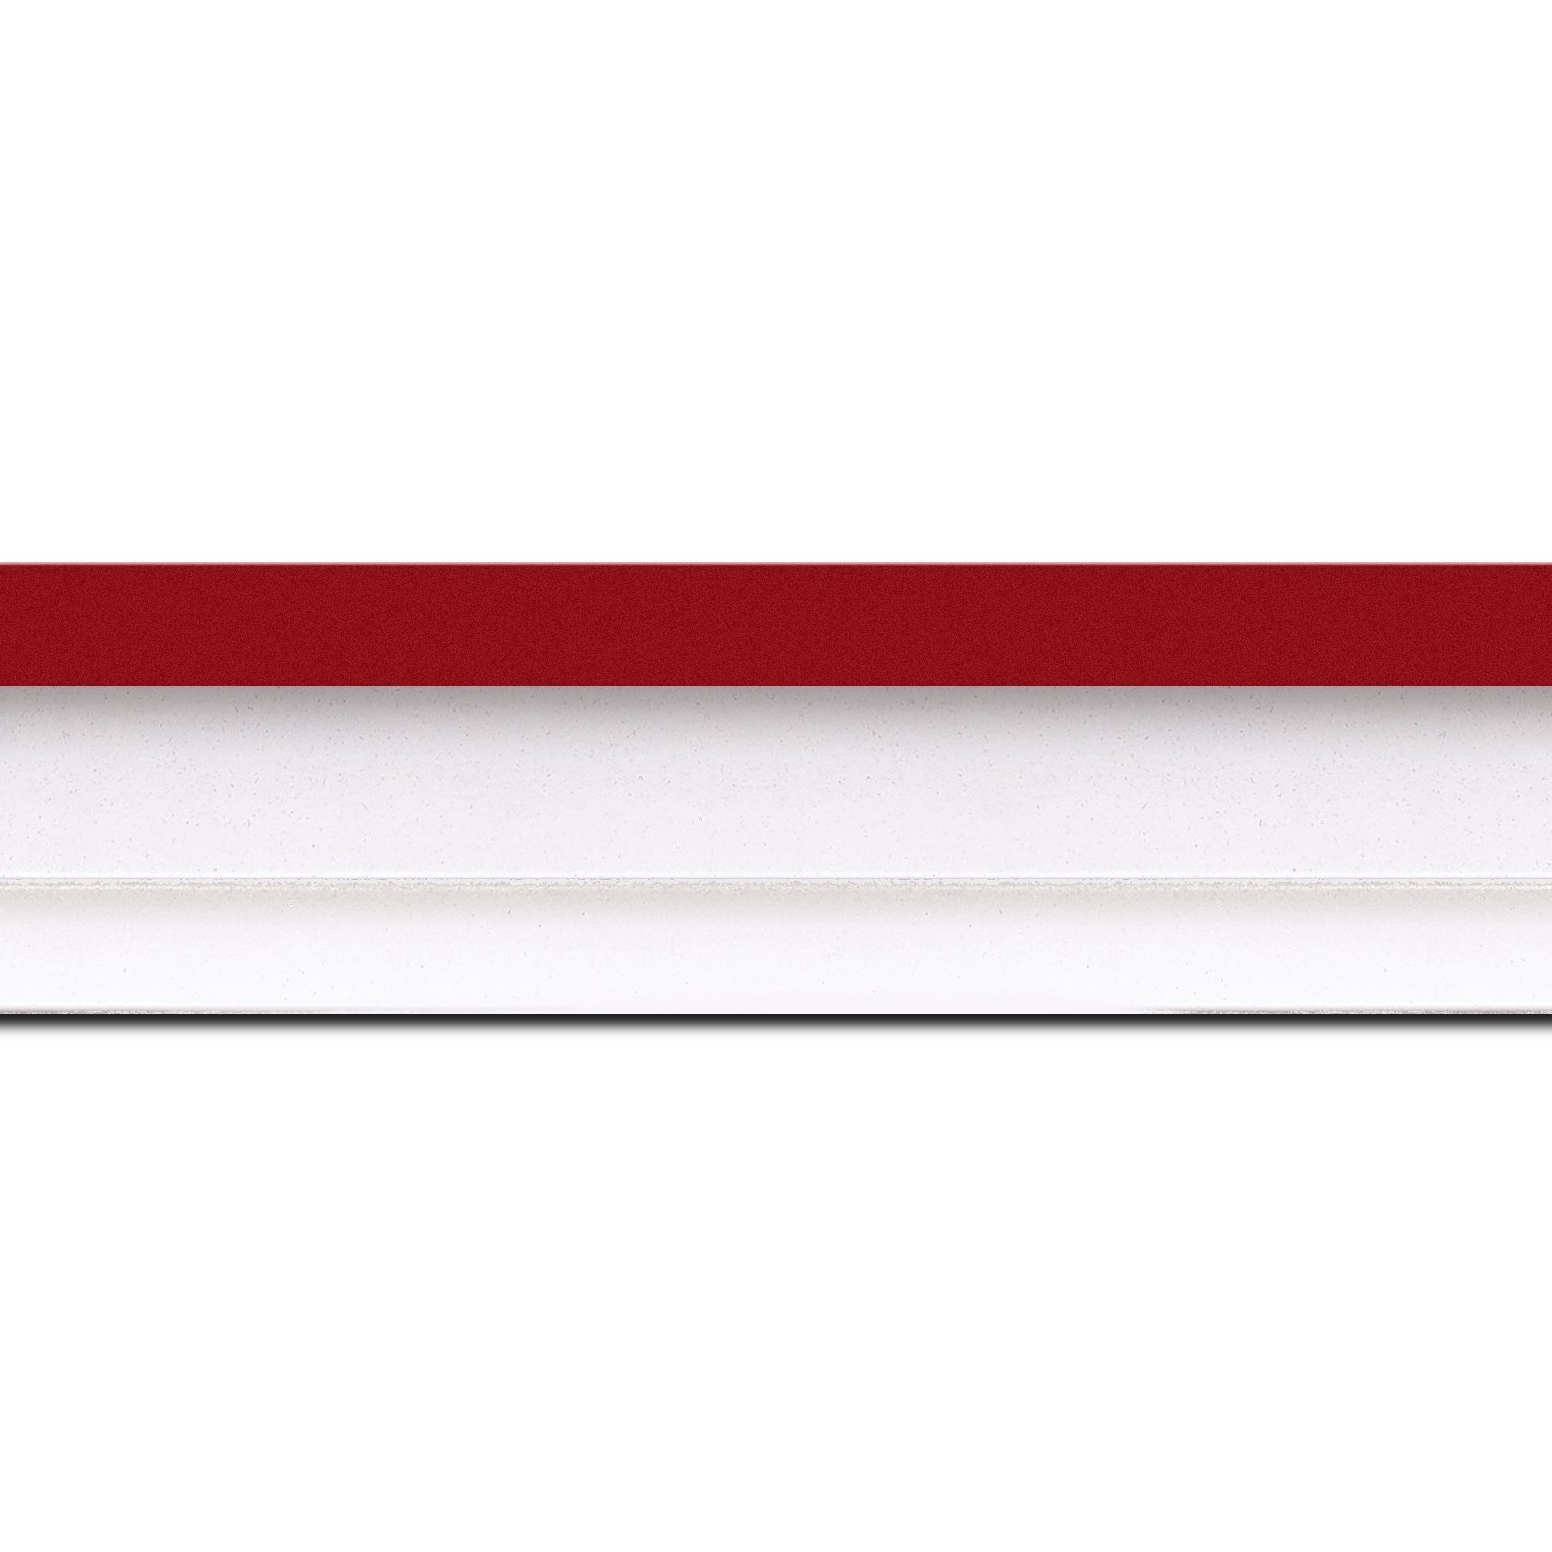 Pack par 12m, bois caisse américaine profil escalier largeur 4.4cm blanc mat filet rouge (spécialement conçu pour les châssis d'une épaisseur jusqu’à 2.5cm )(longueur baguette pouvant varier entre 2.40m et 3m selon arrivage des bois)